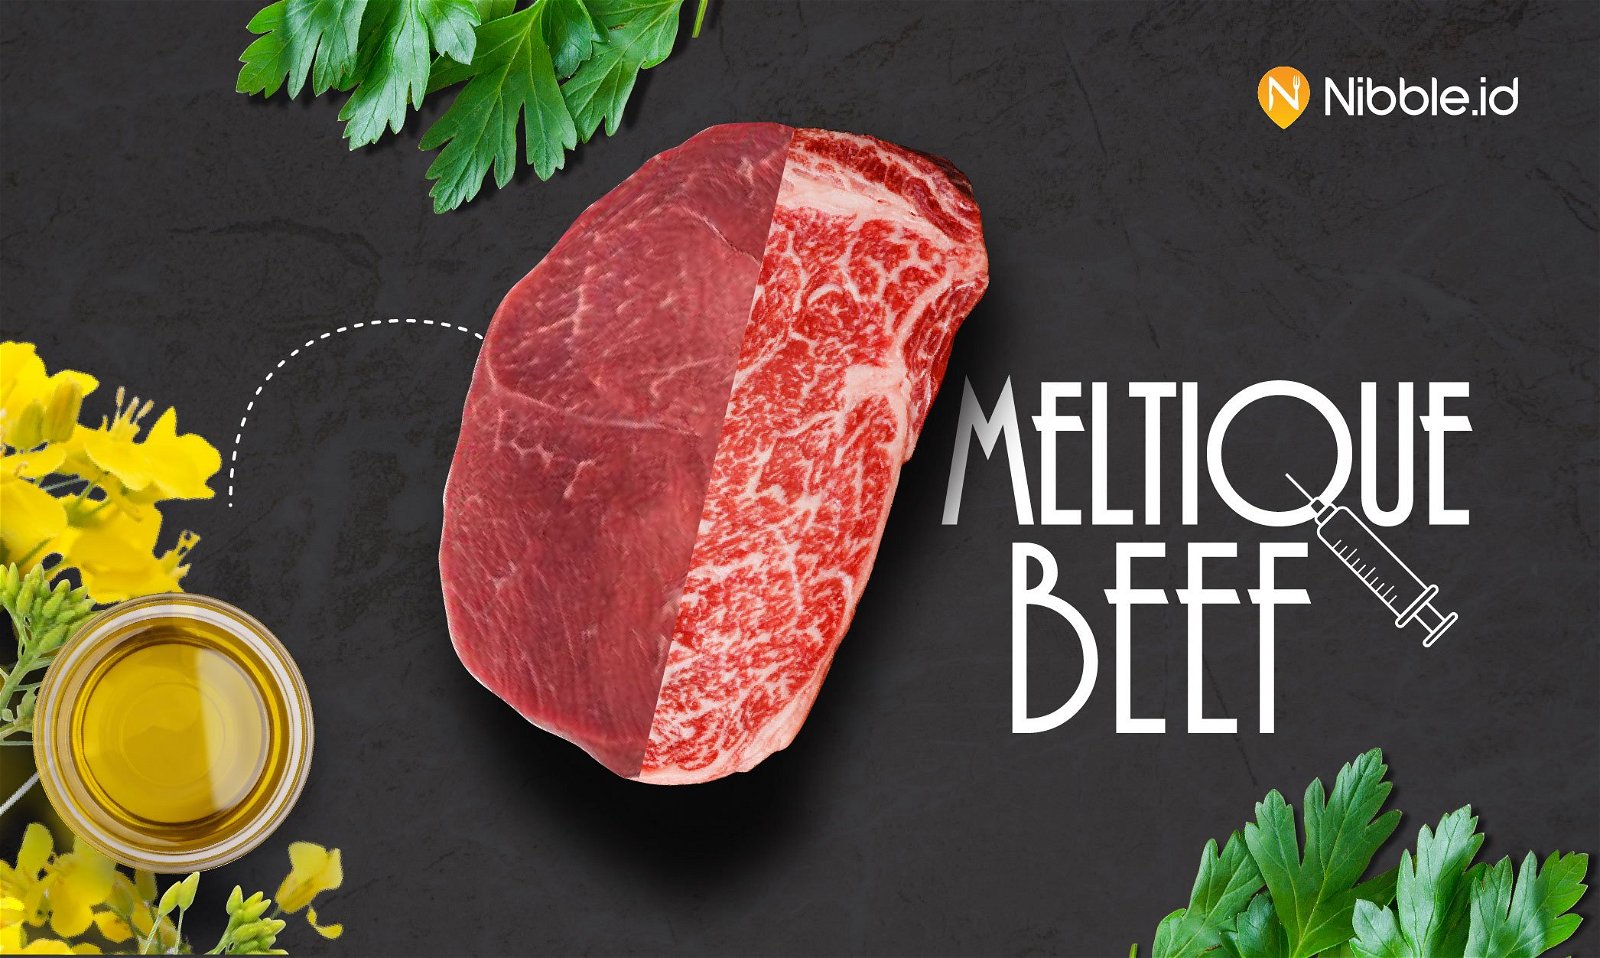 Meltique Beef, Jalan Pintas Bikin Daging Steak Murah